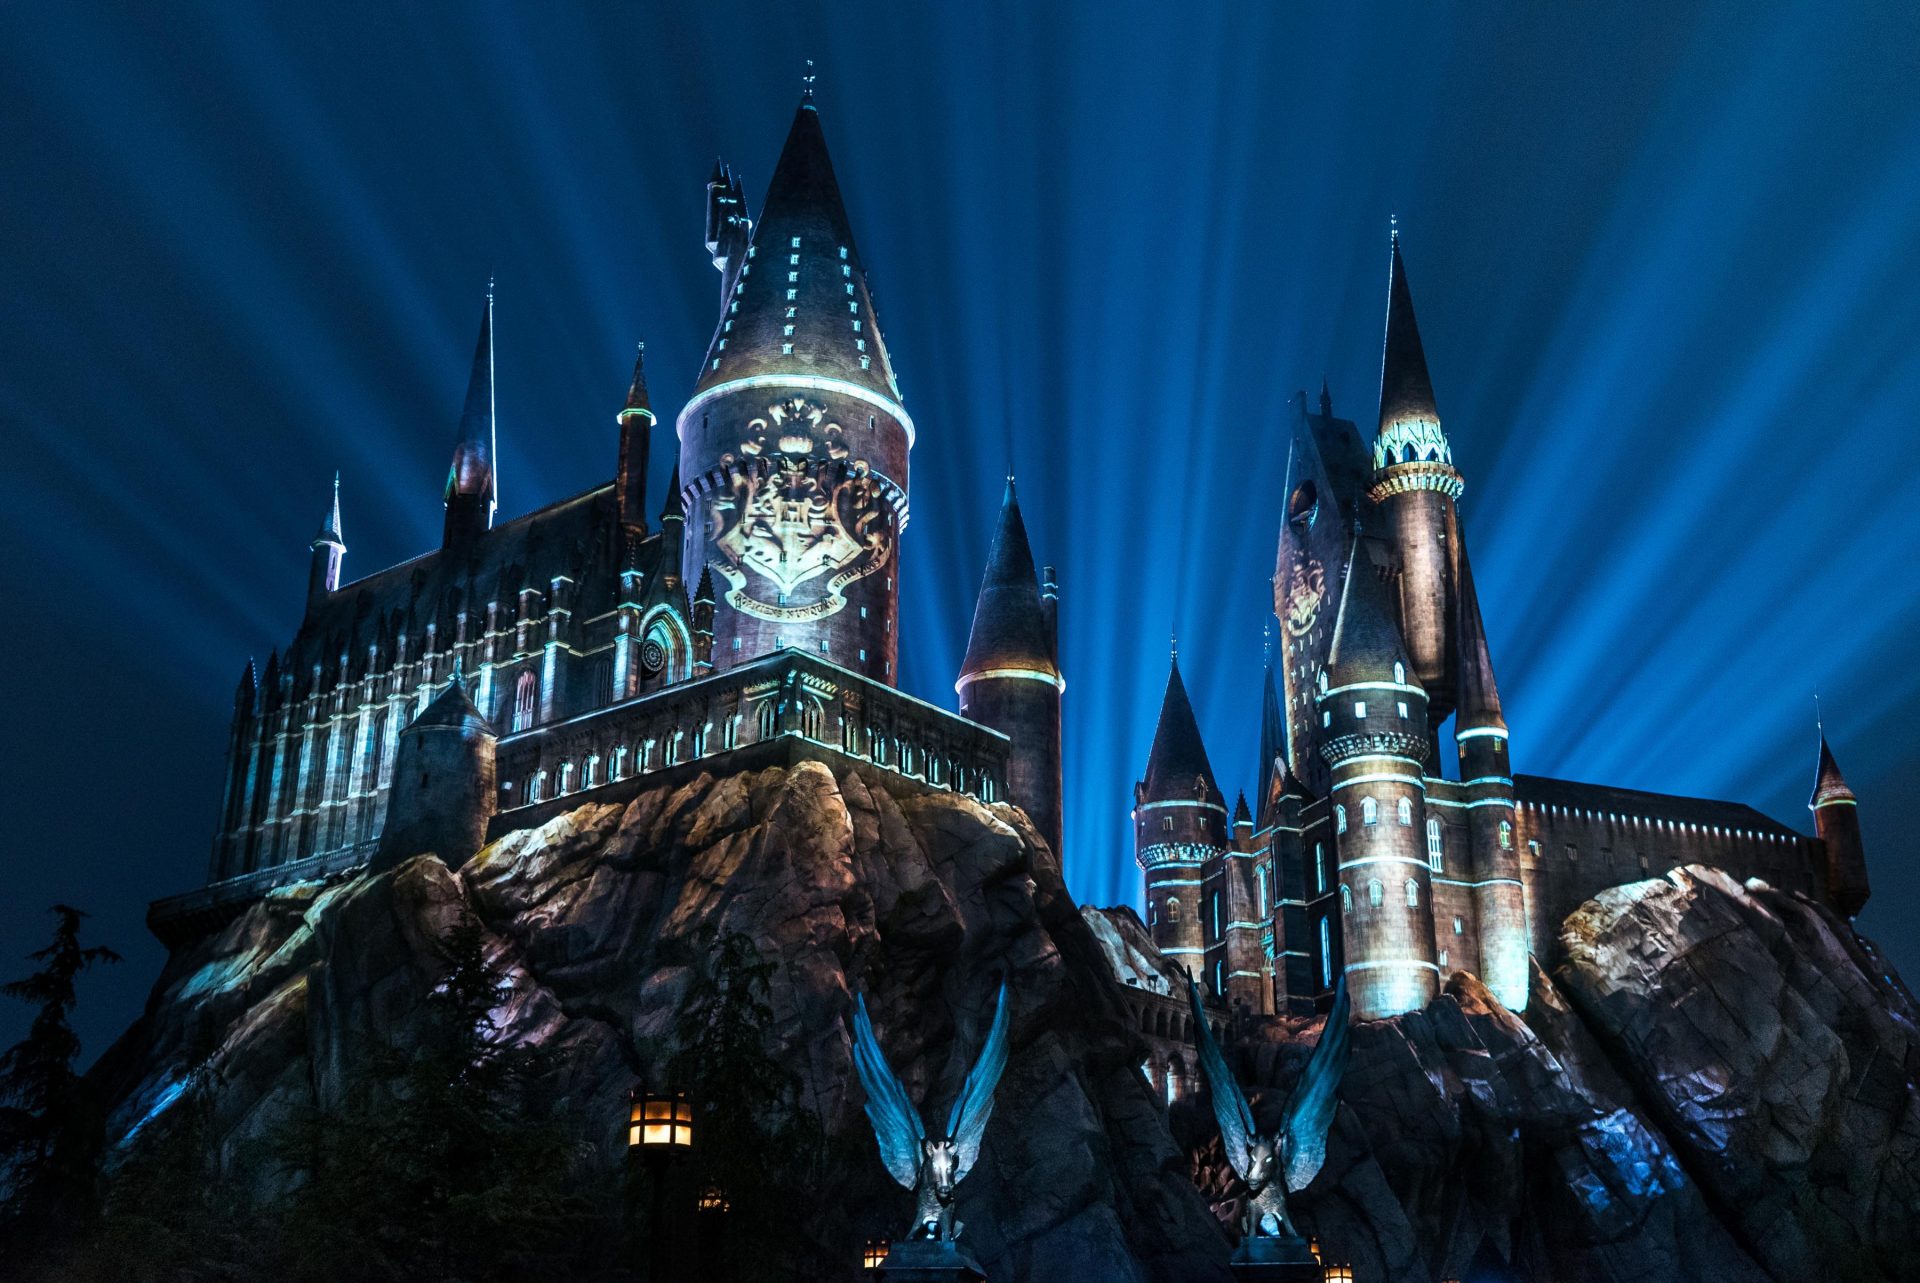 Show noturno no Castelo de Hogwarts retorna ao Universal Studios Hollywood